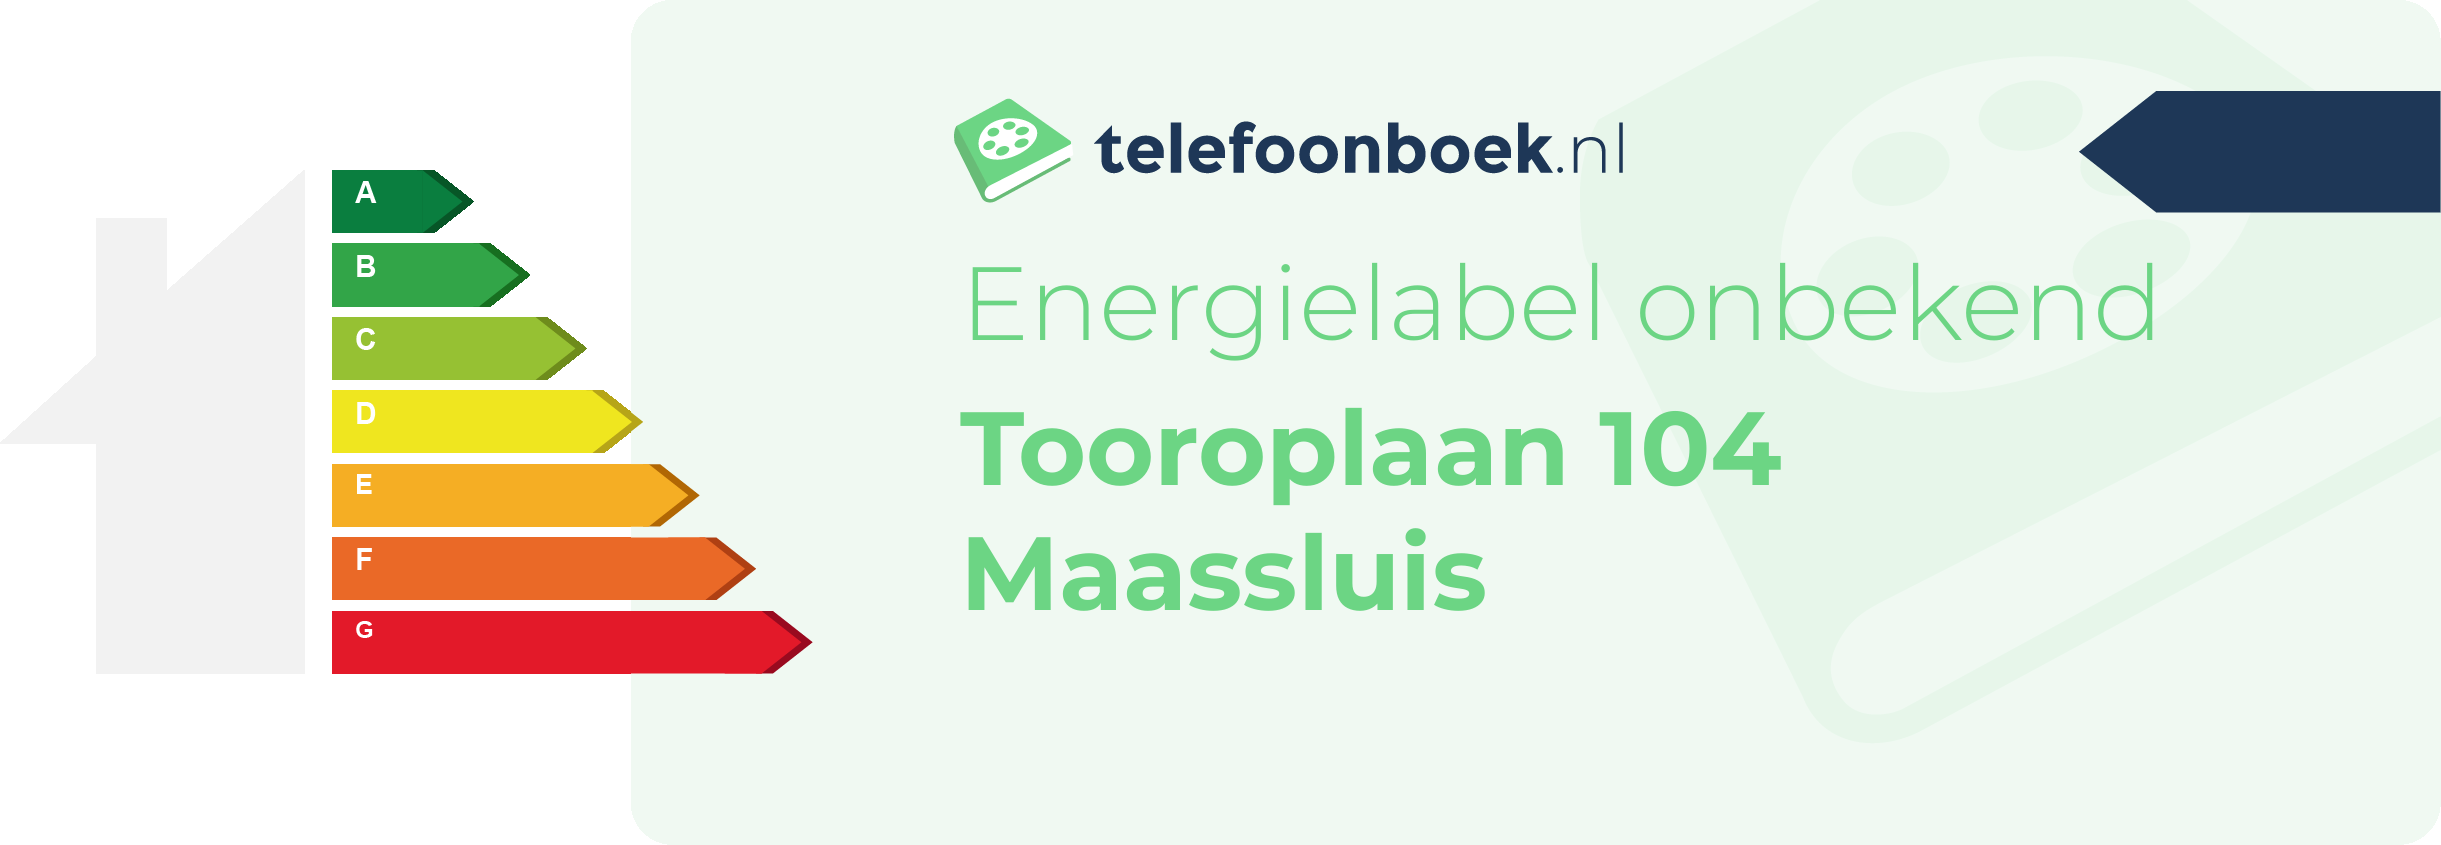 Energielabel Tooroplaan 104 Maassluis